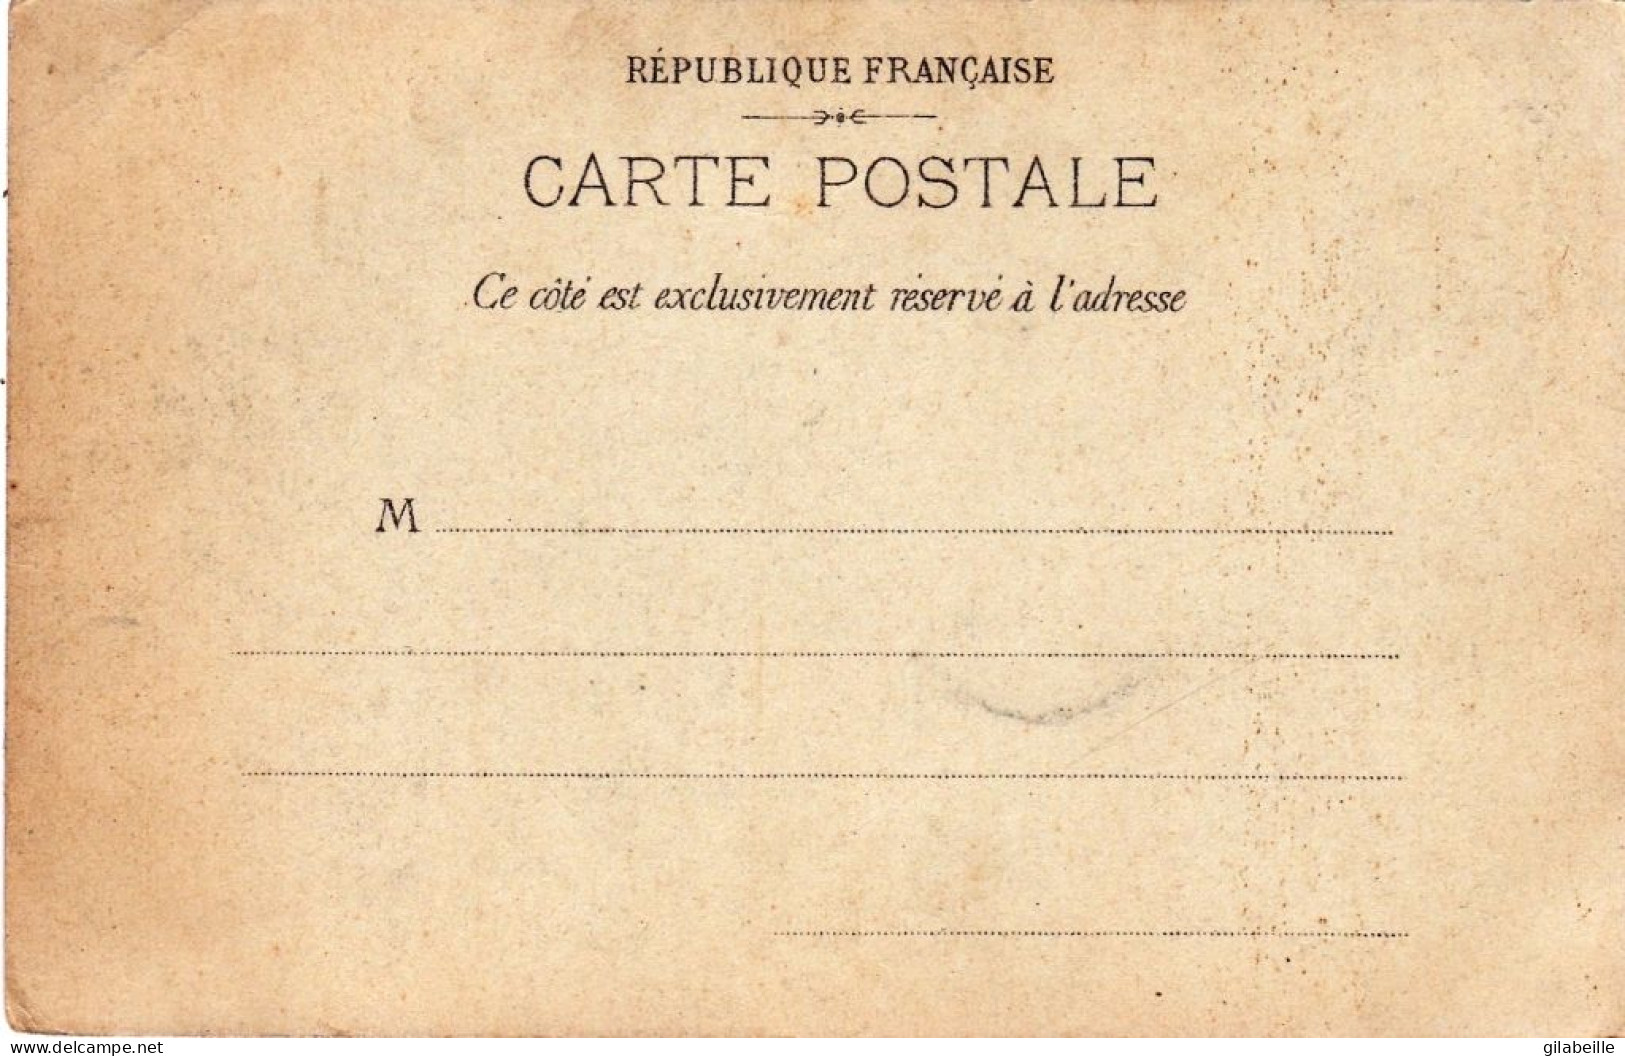 75 - PARIS - Exposition Universelle De 1900 - Exposition Coloniale Du Trocadero - Expositions